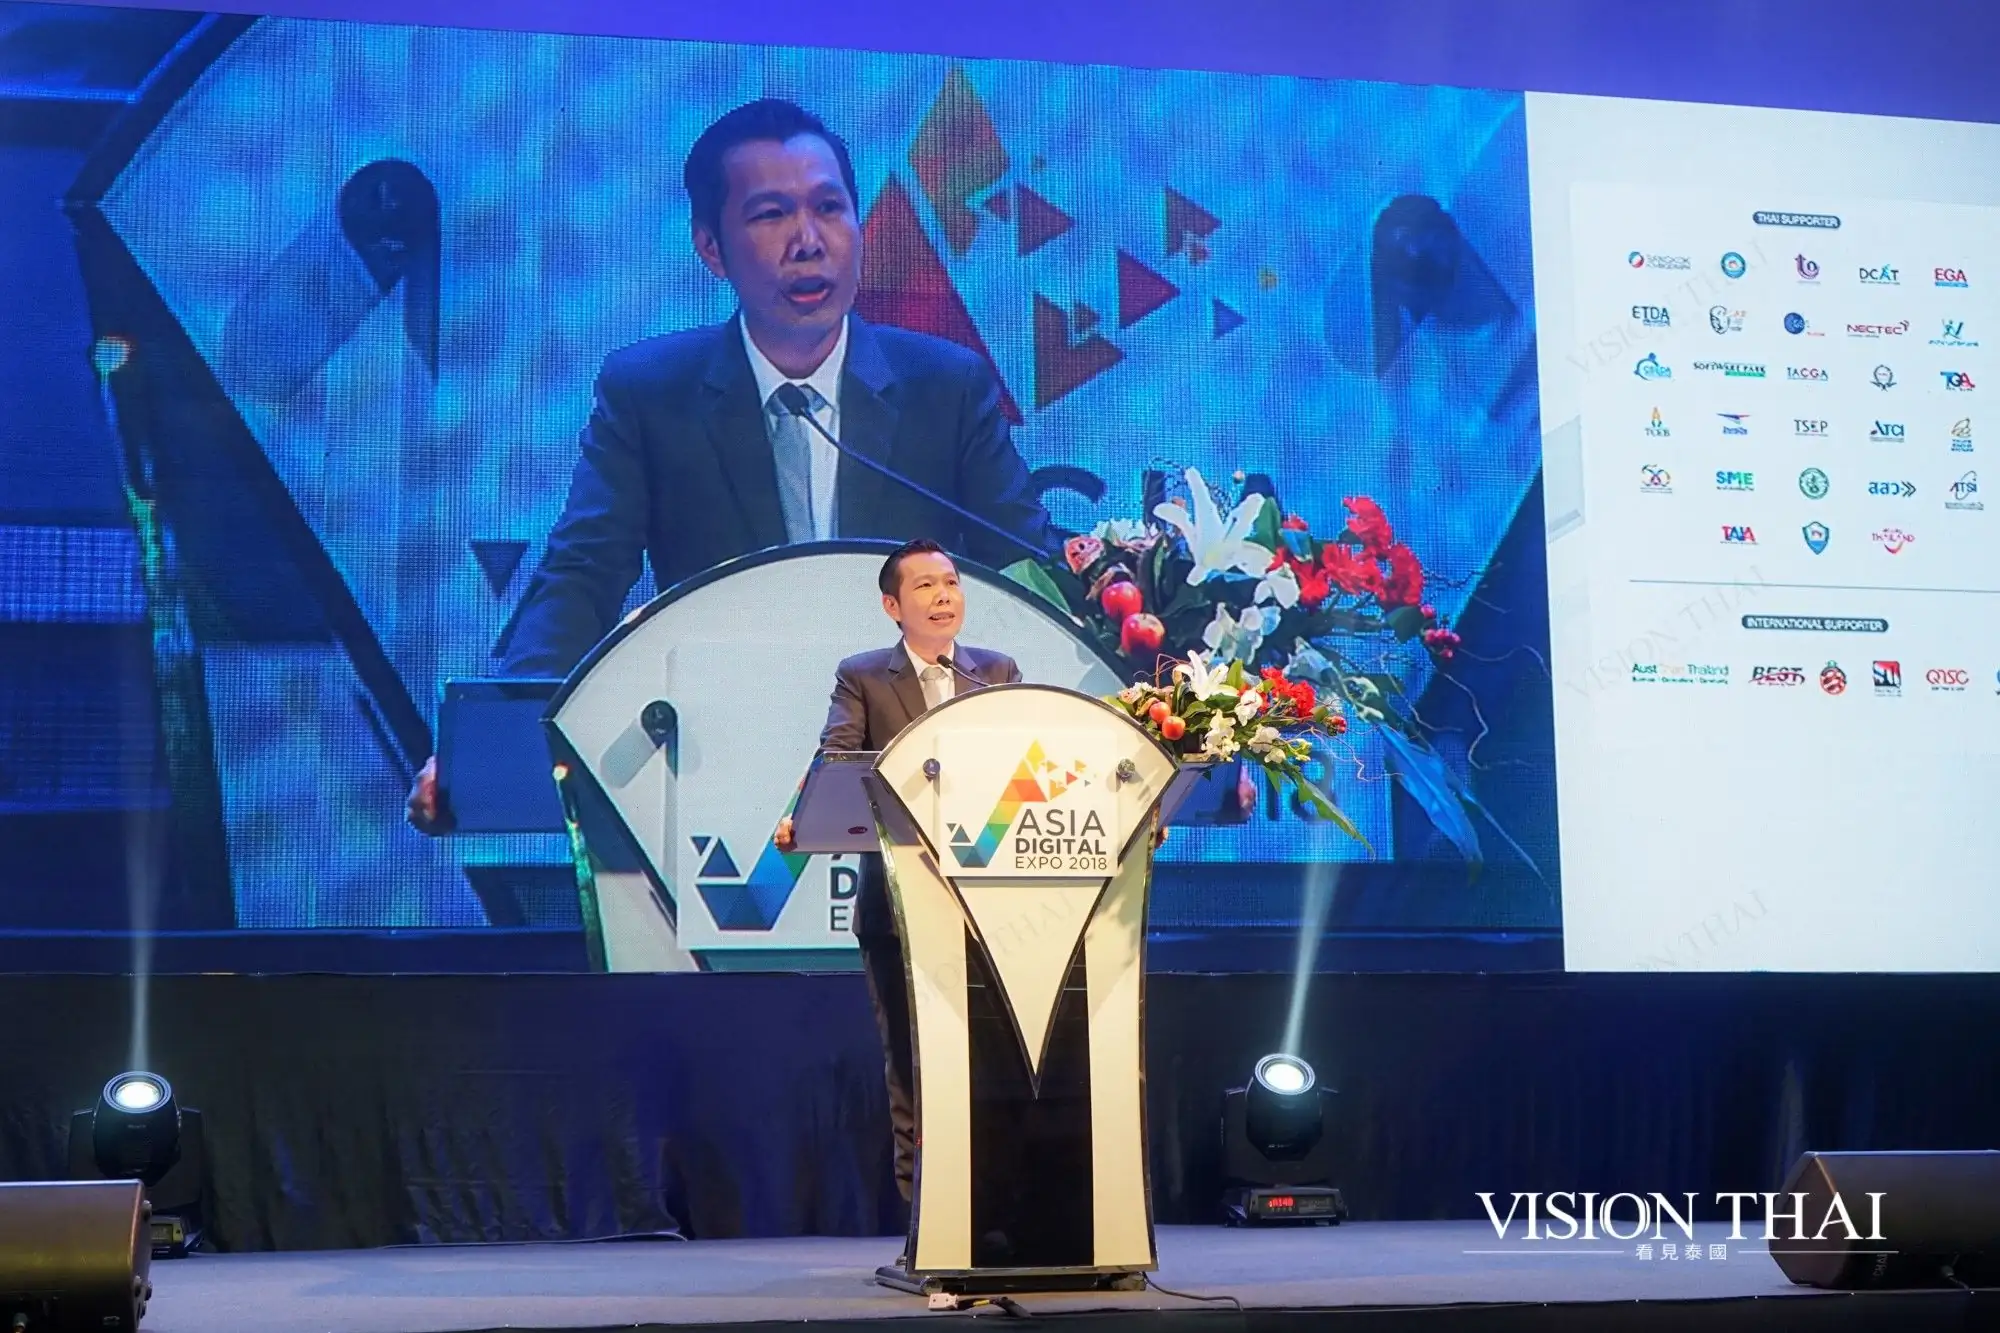 2018亞洲數位博覽會 Asia Digital Expo 2018: Digital Transformation